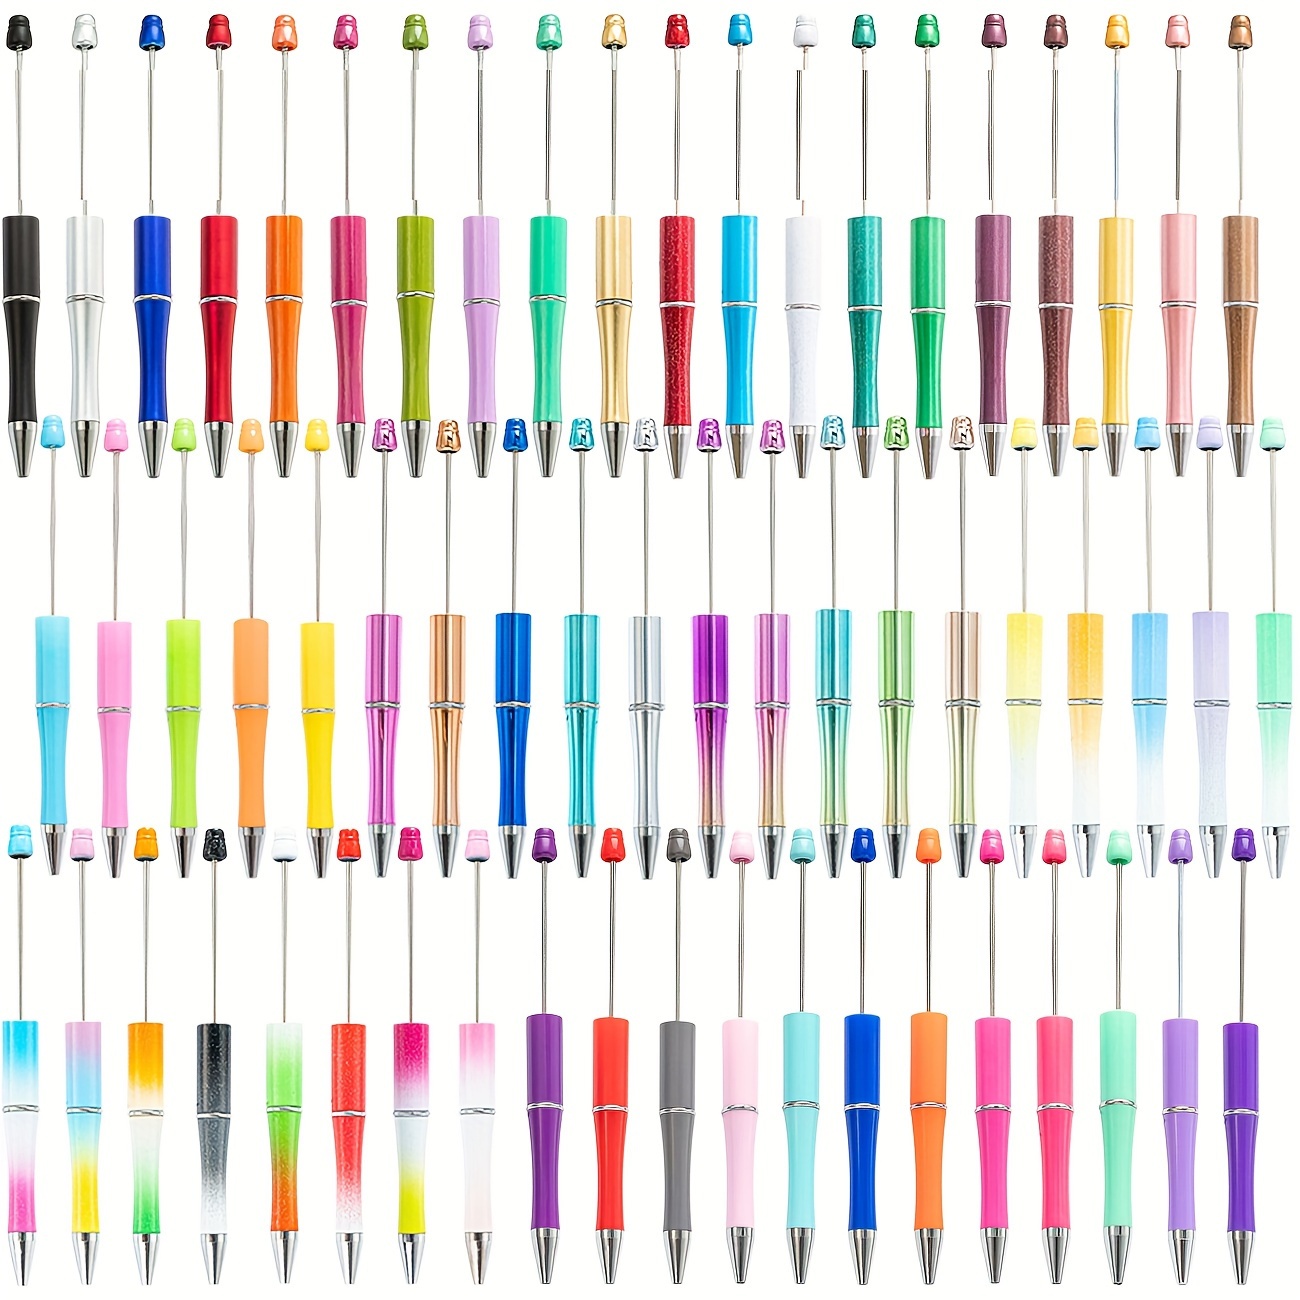 

Ensemble de 50 stylos bille en plastique multicolores - Idéal pour les loisirs créatifs avec encre noire, adapté pour le bureau et l'école - Convient aux personnes de 14 ans et plus